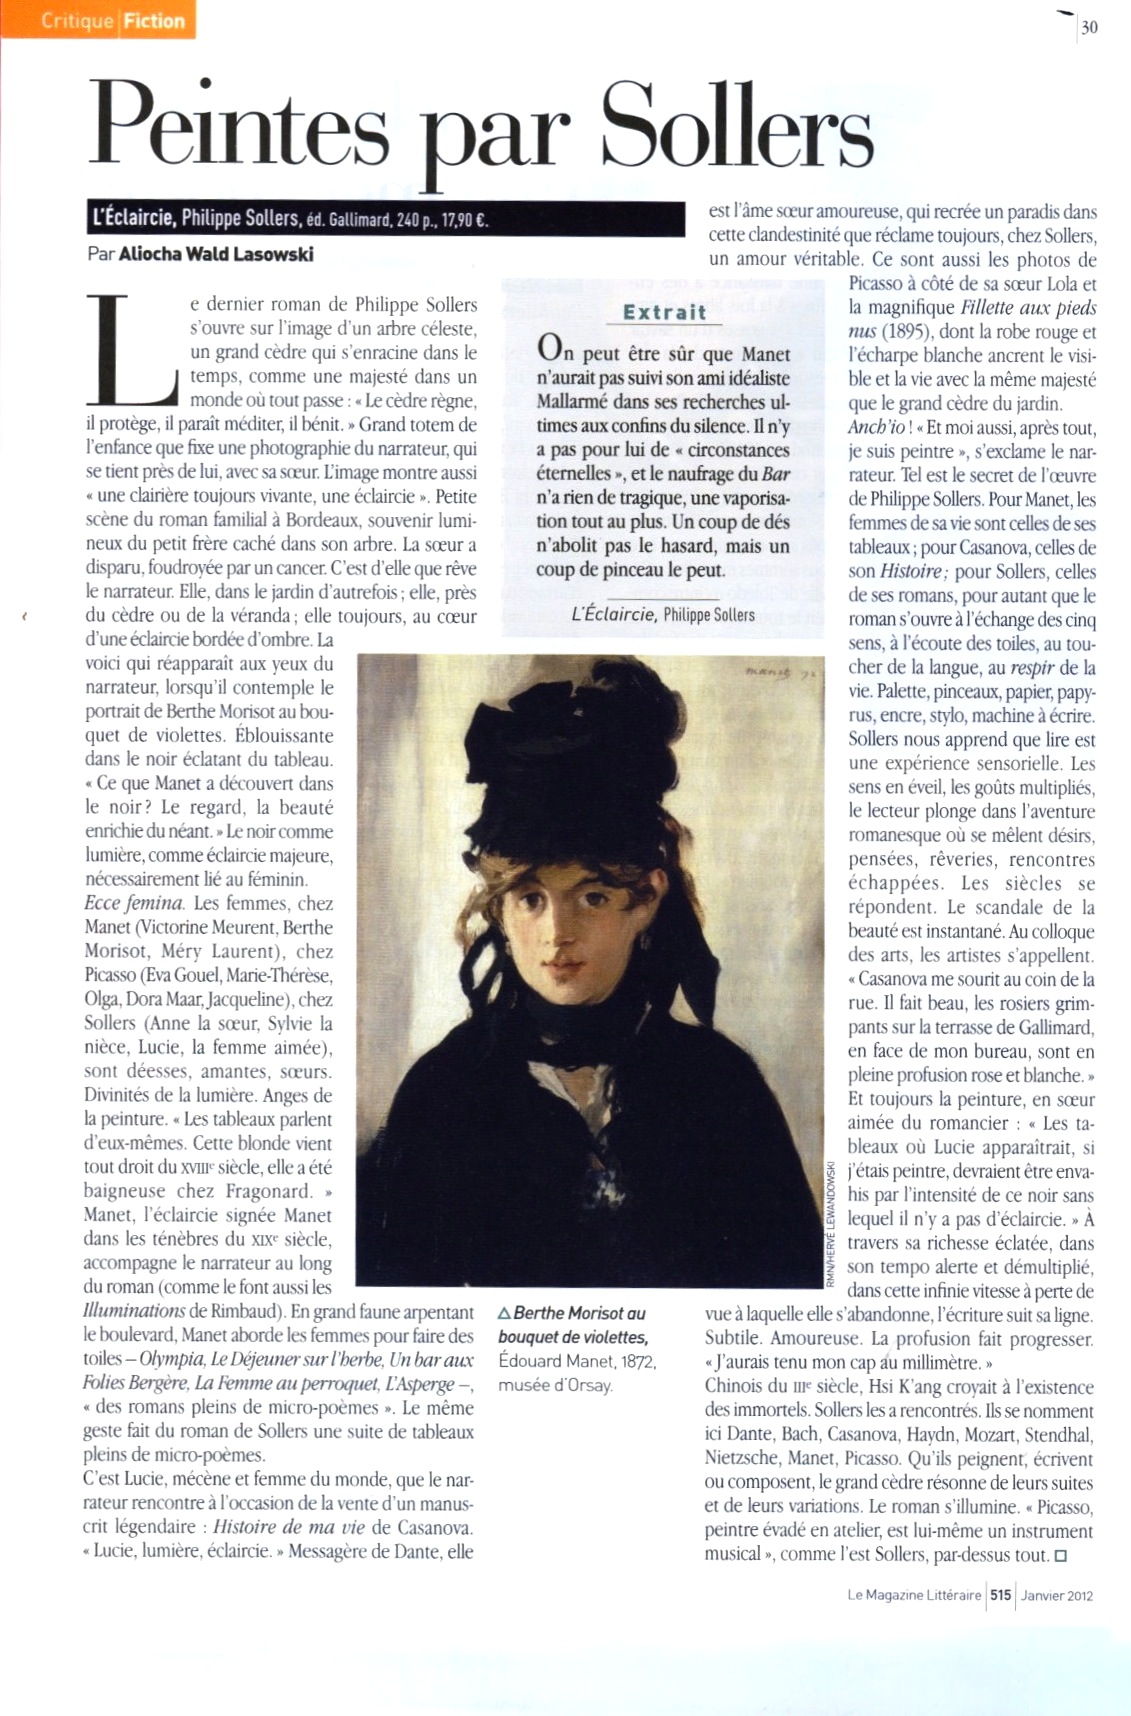 L'Éclaircie, critique dans le Magazine littéraire janvier 2012